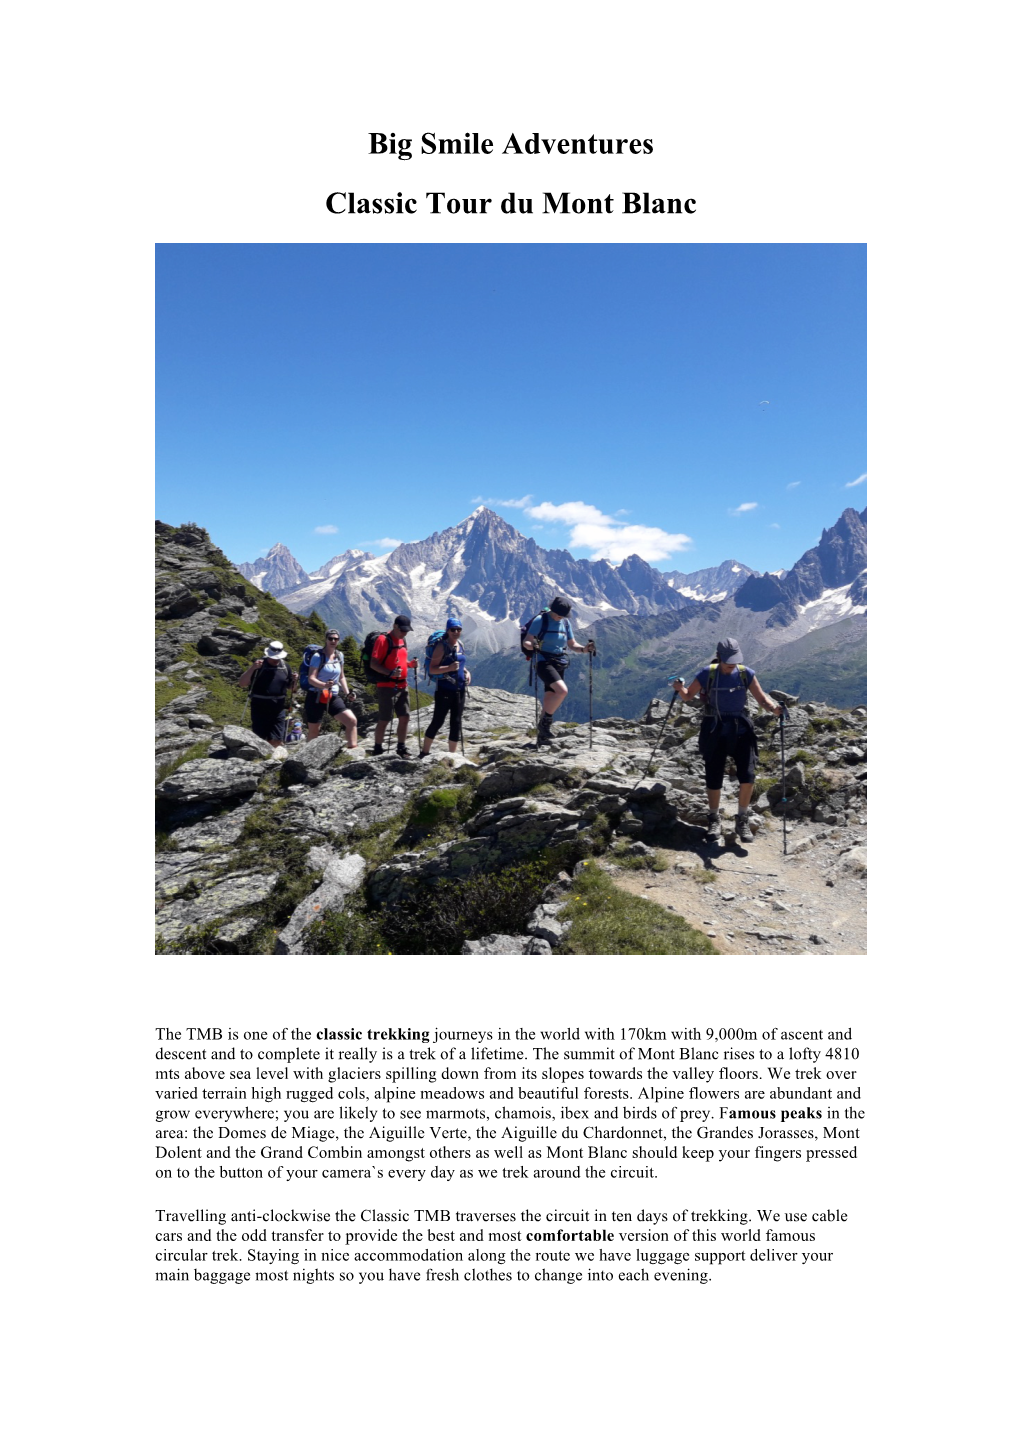 Big Smile Adventures Classic Tour Du Mont Blanc